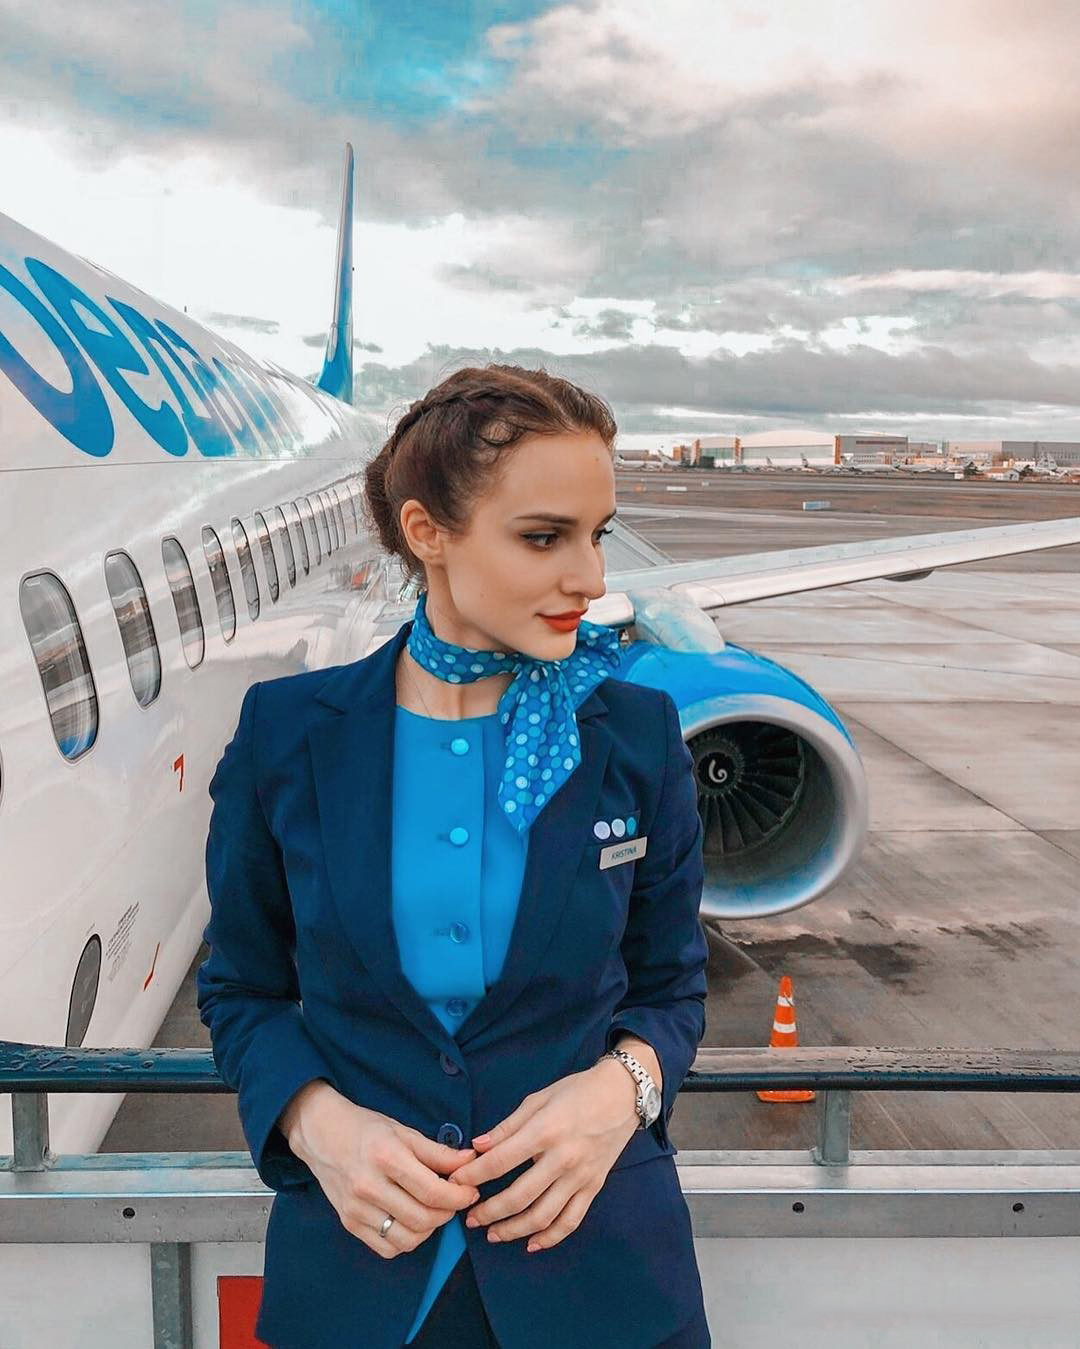 俄航最美空姐达利亚图片